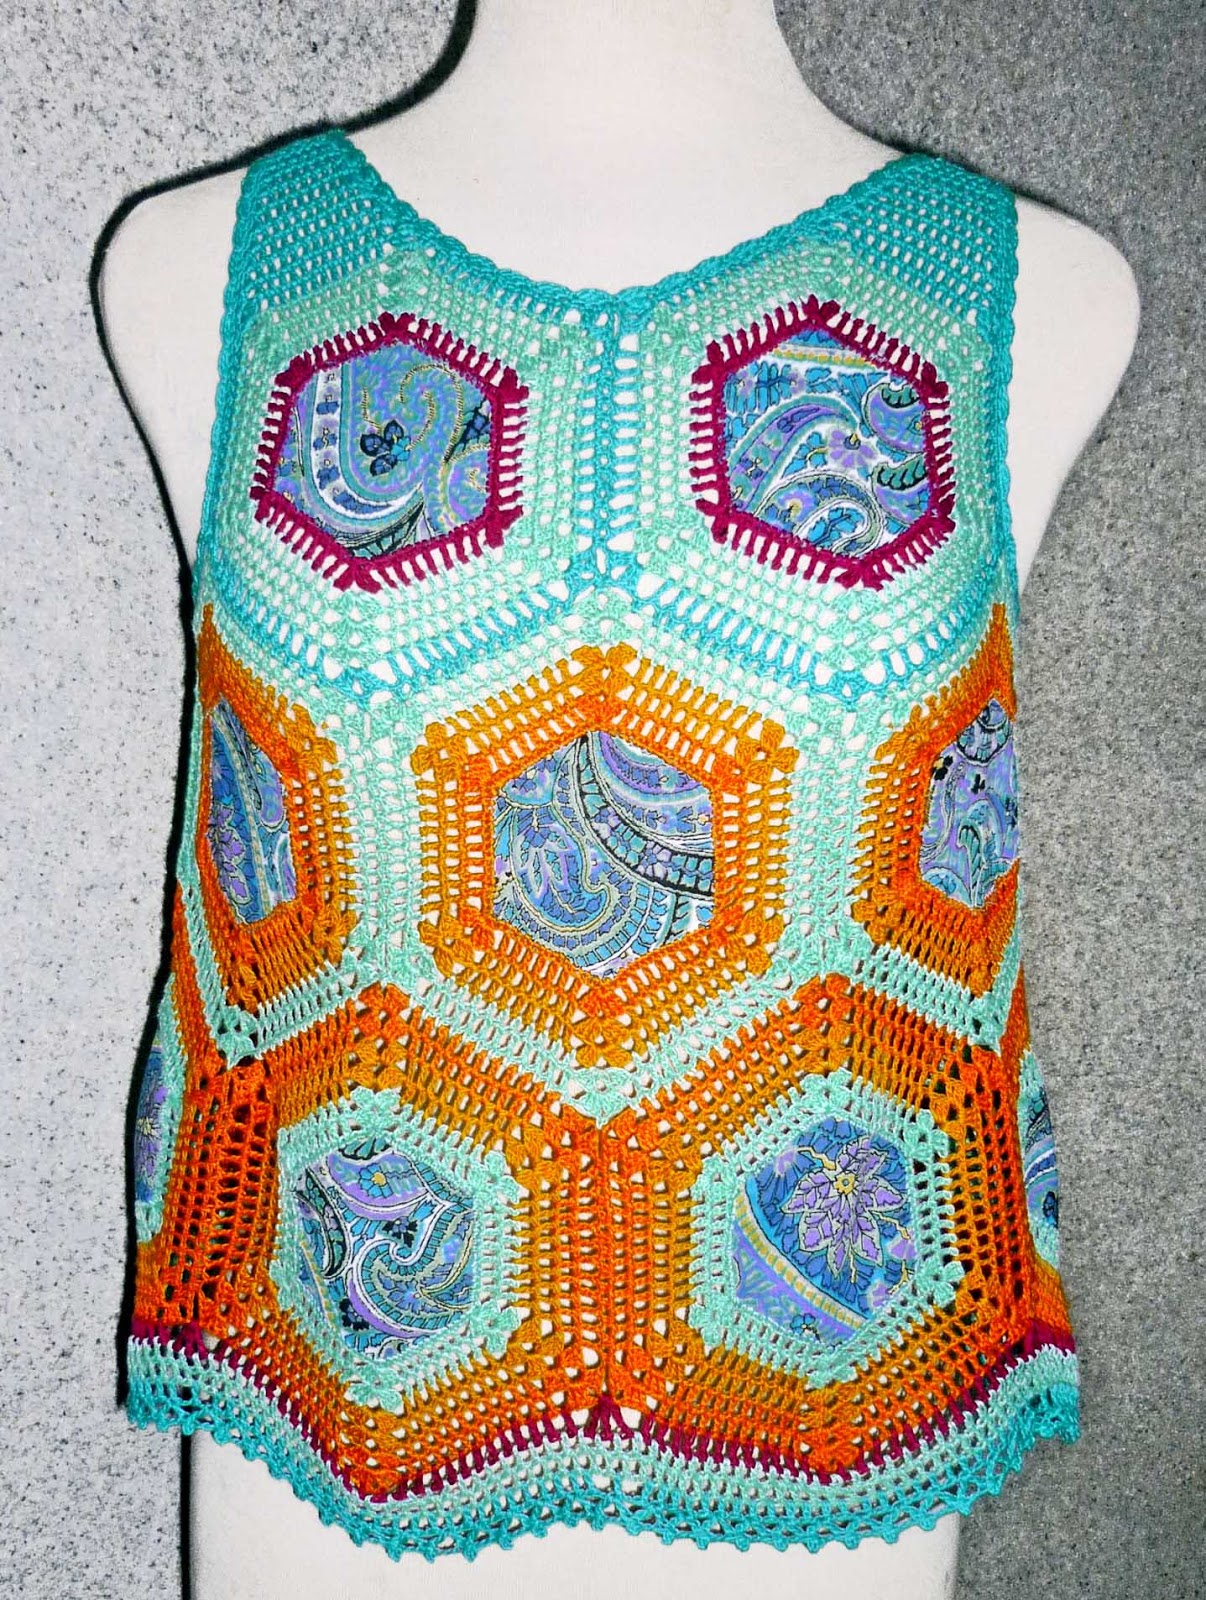 Tejidos Carmesí: Blusa tejida a crochet en hilos colores verde agua, amarillo, naranja, magenta y y aplicaciones de tela estampada, talla M